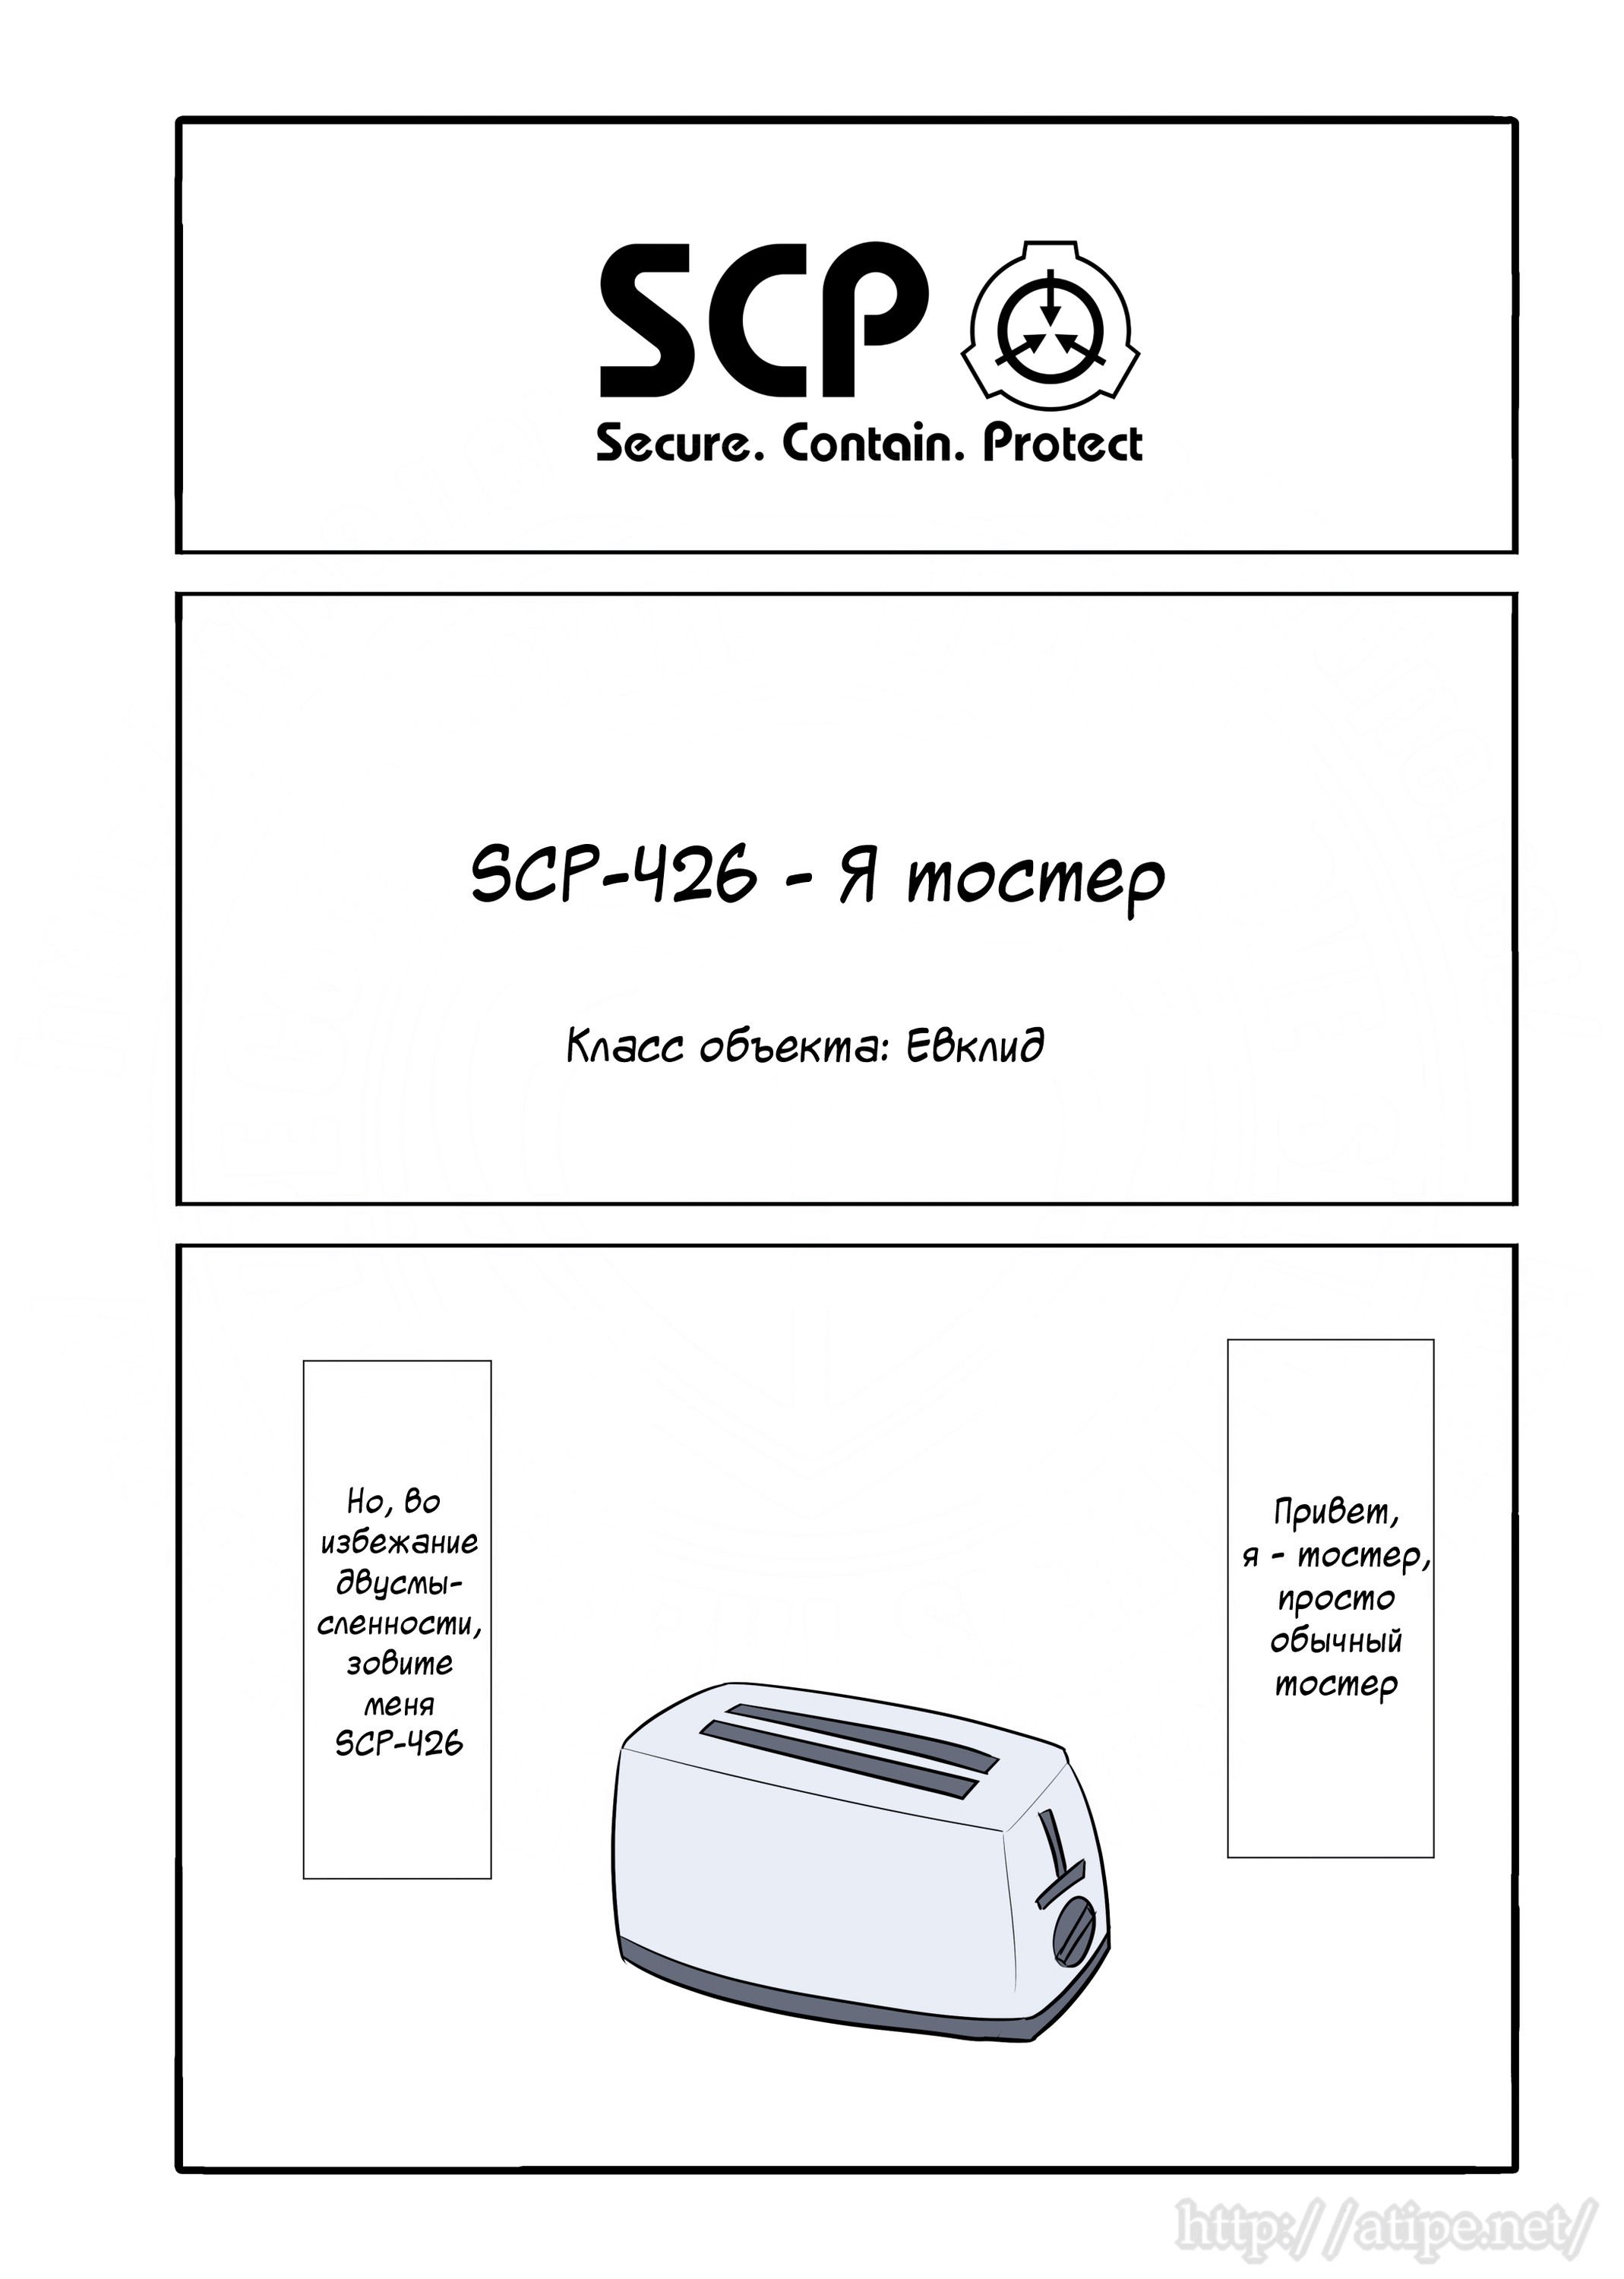 Упрощенный SCP 1 - 44 SCP-426